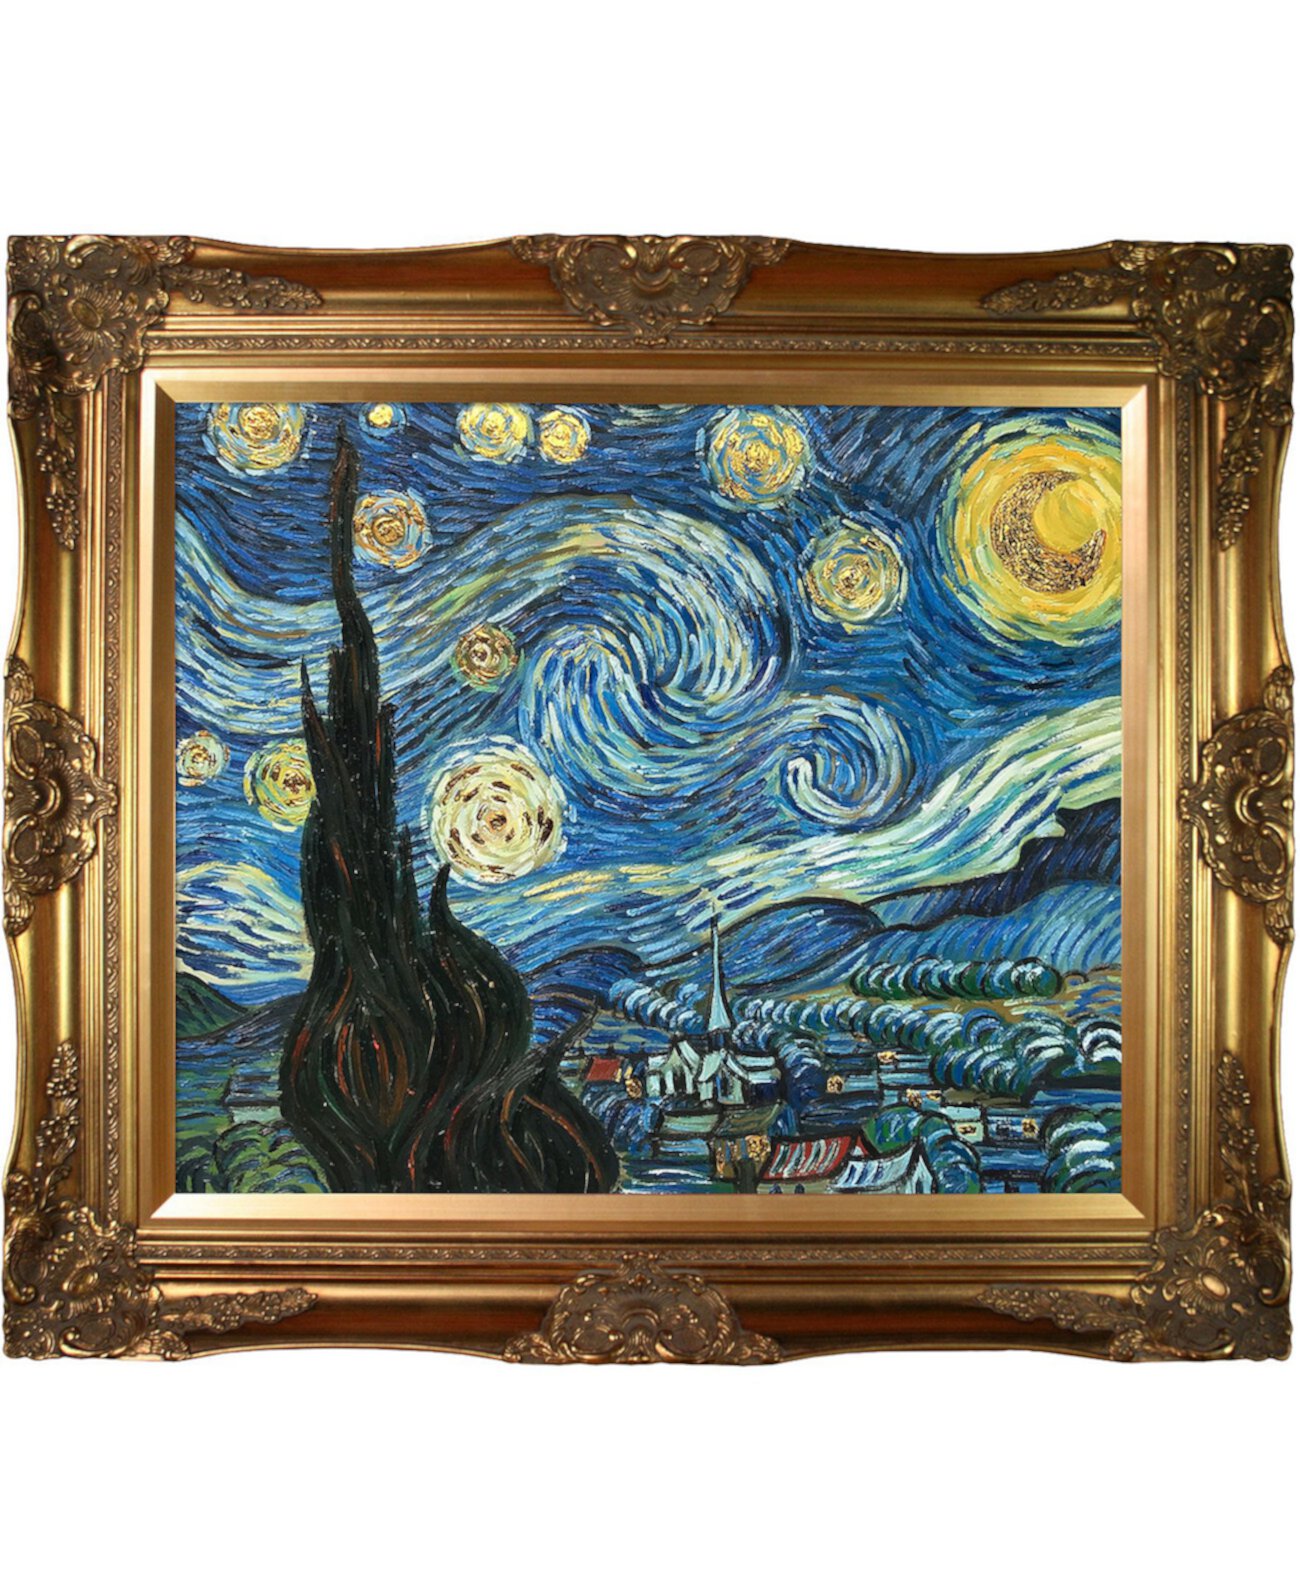 автор Overstockart "Звездная ночь" Винсента Ван Гога с викторианской рамкой Картина маслом Настенная живопись, 32 "x 28" La Pastiche